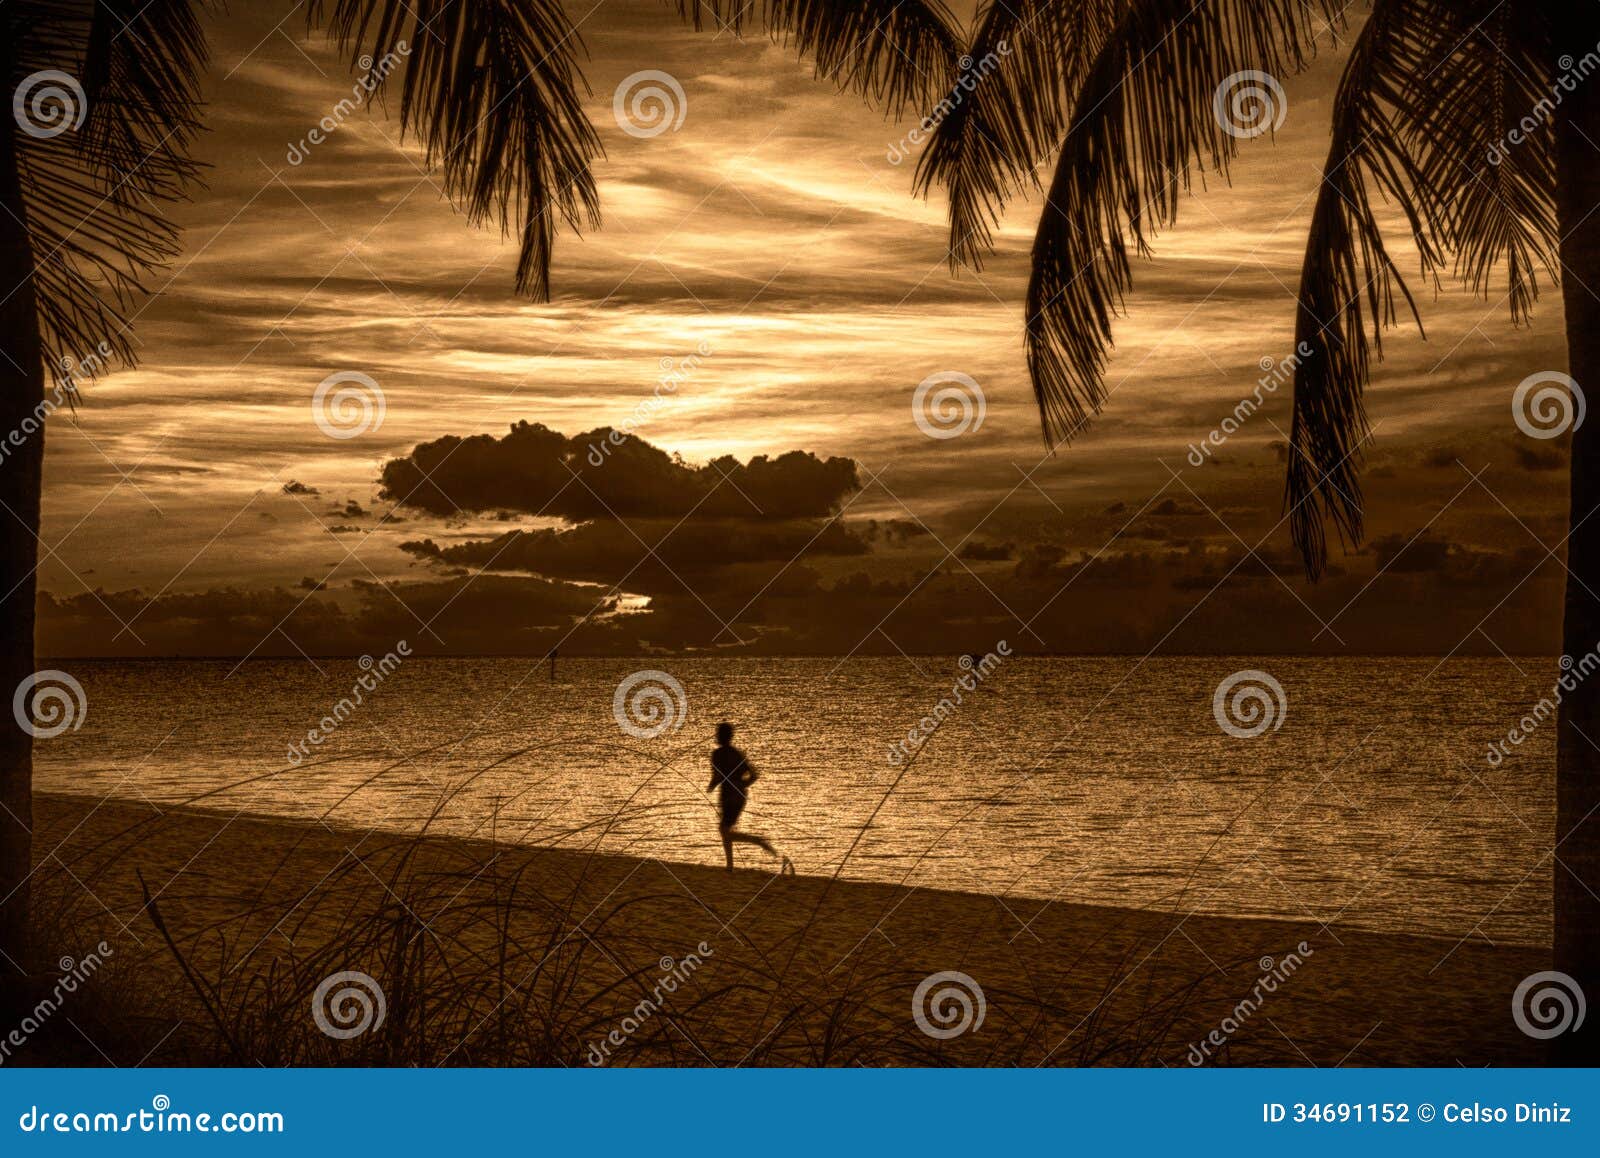 Plaża przy zmierzchem. Sylwetka osoba bieg na plaży przy zmierzchem, Key West, Monroe okręg administracyjny, Floryda, usa